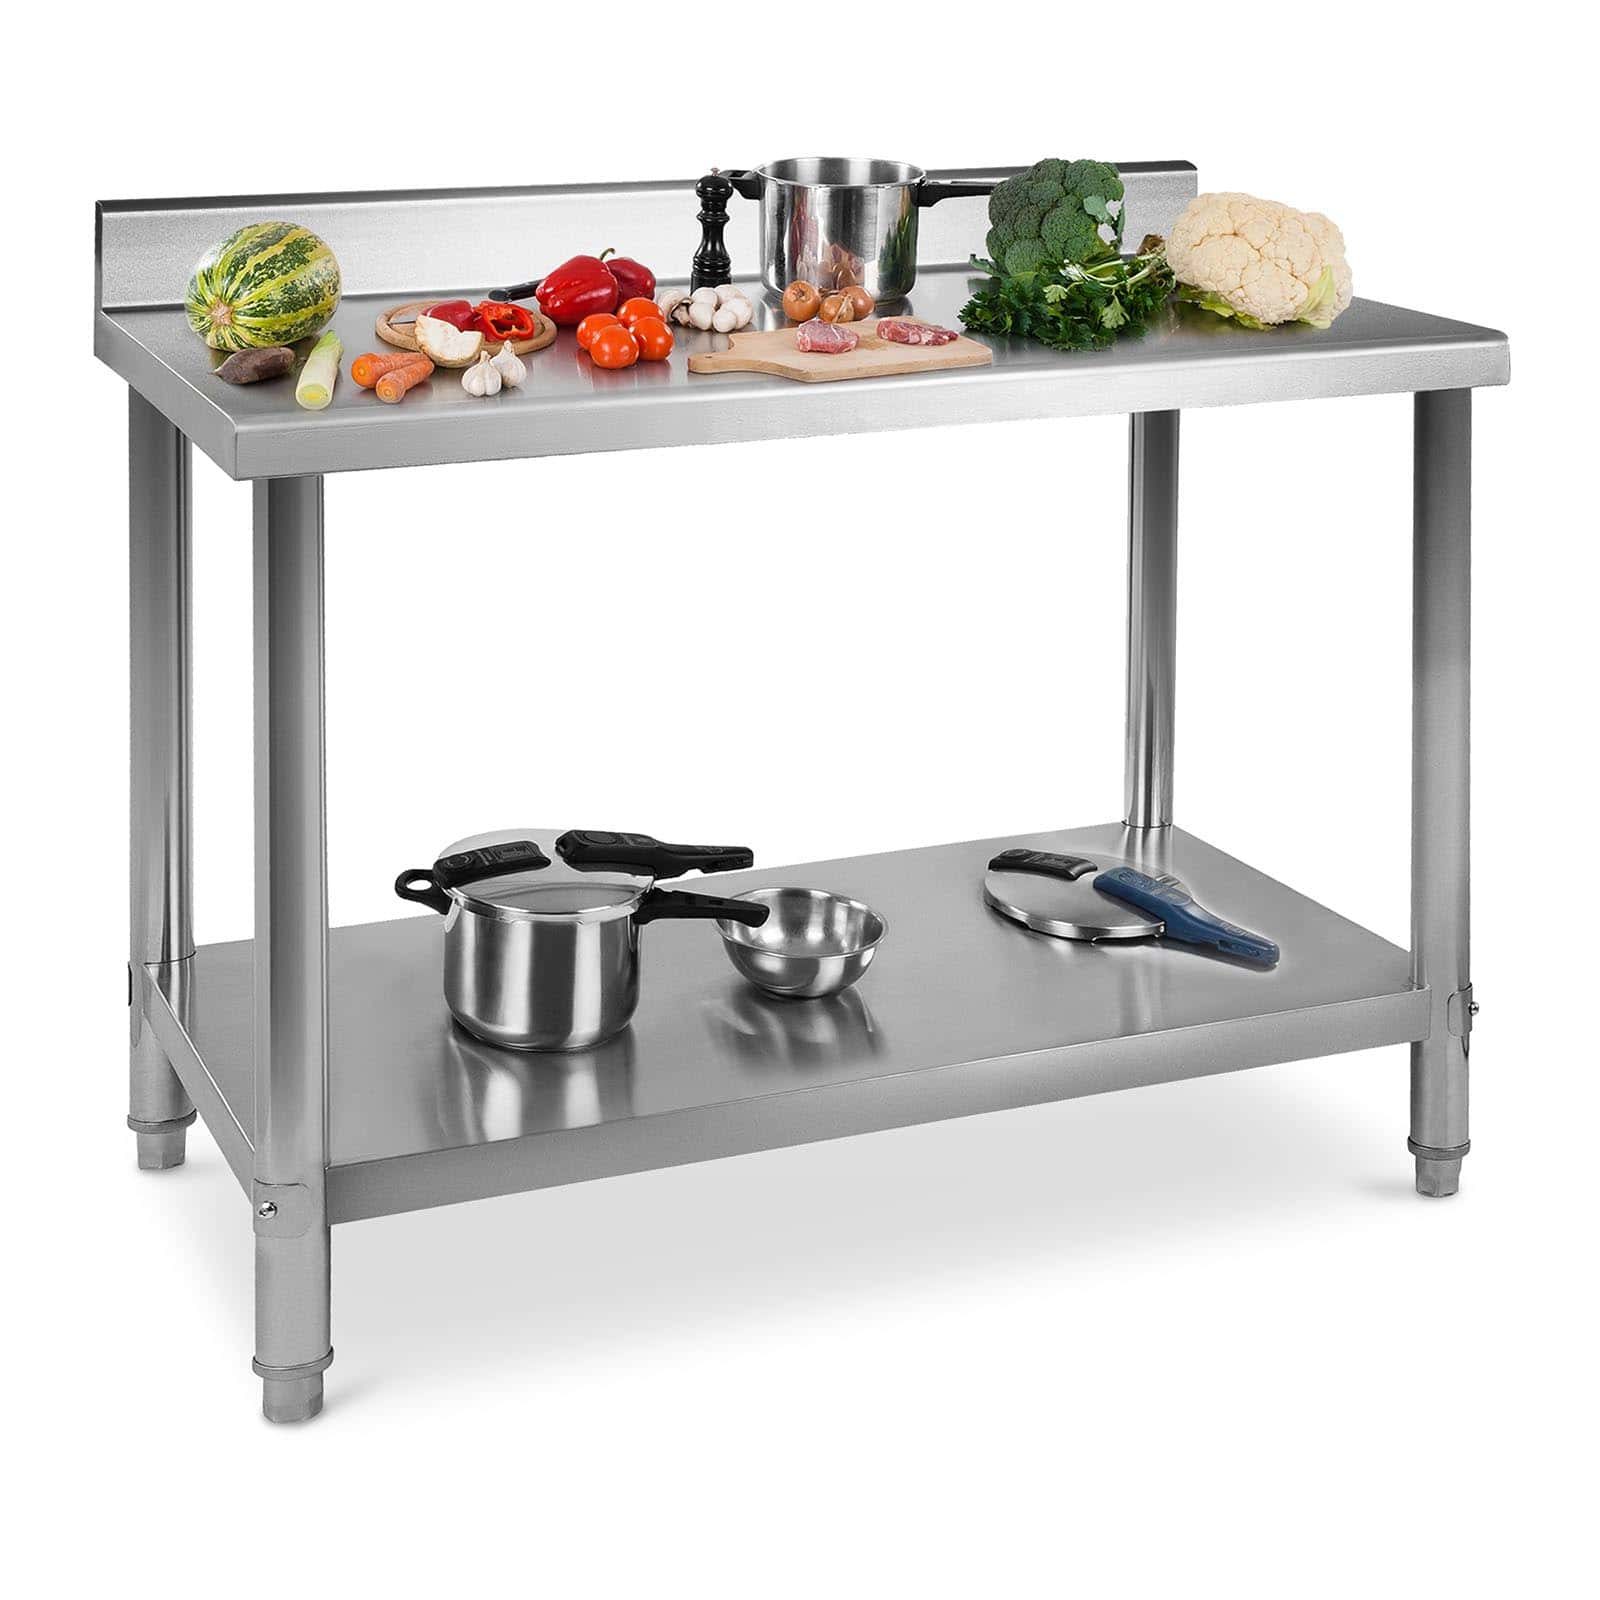 Nerezový pracovní stůl 100 x 70 cm s lemy 120 kg - Gastro pracovní stoly Royal Catering